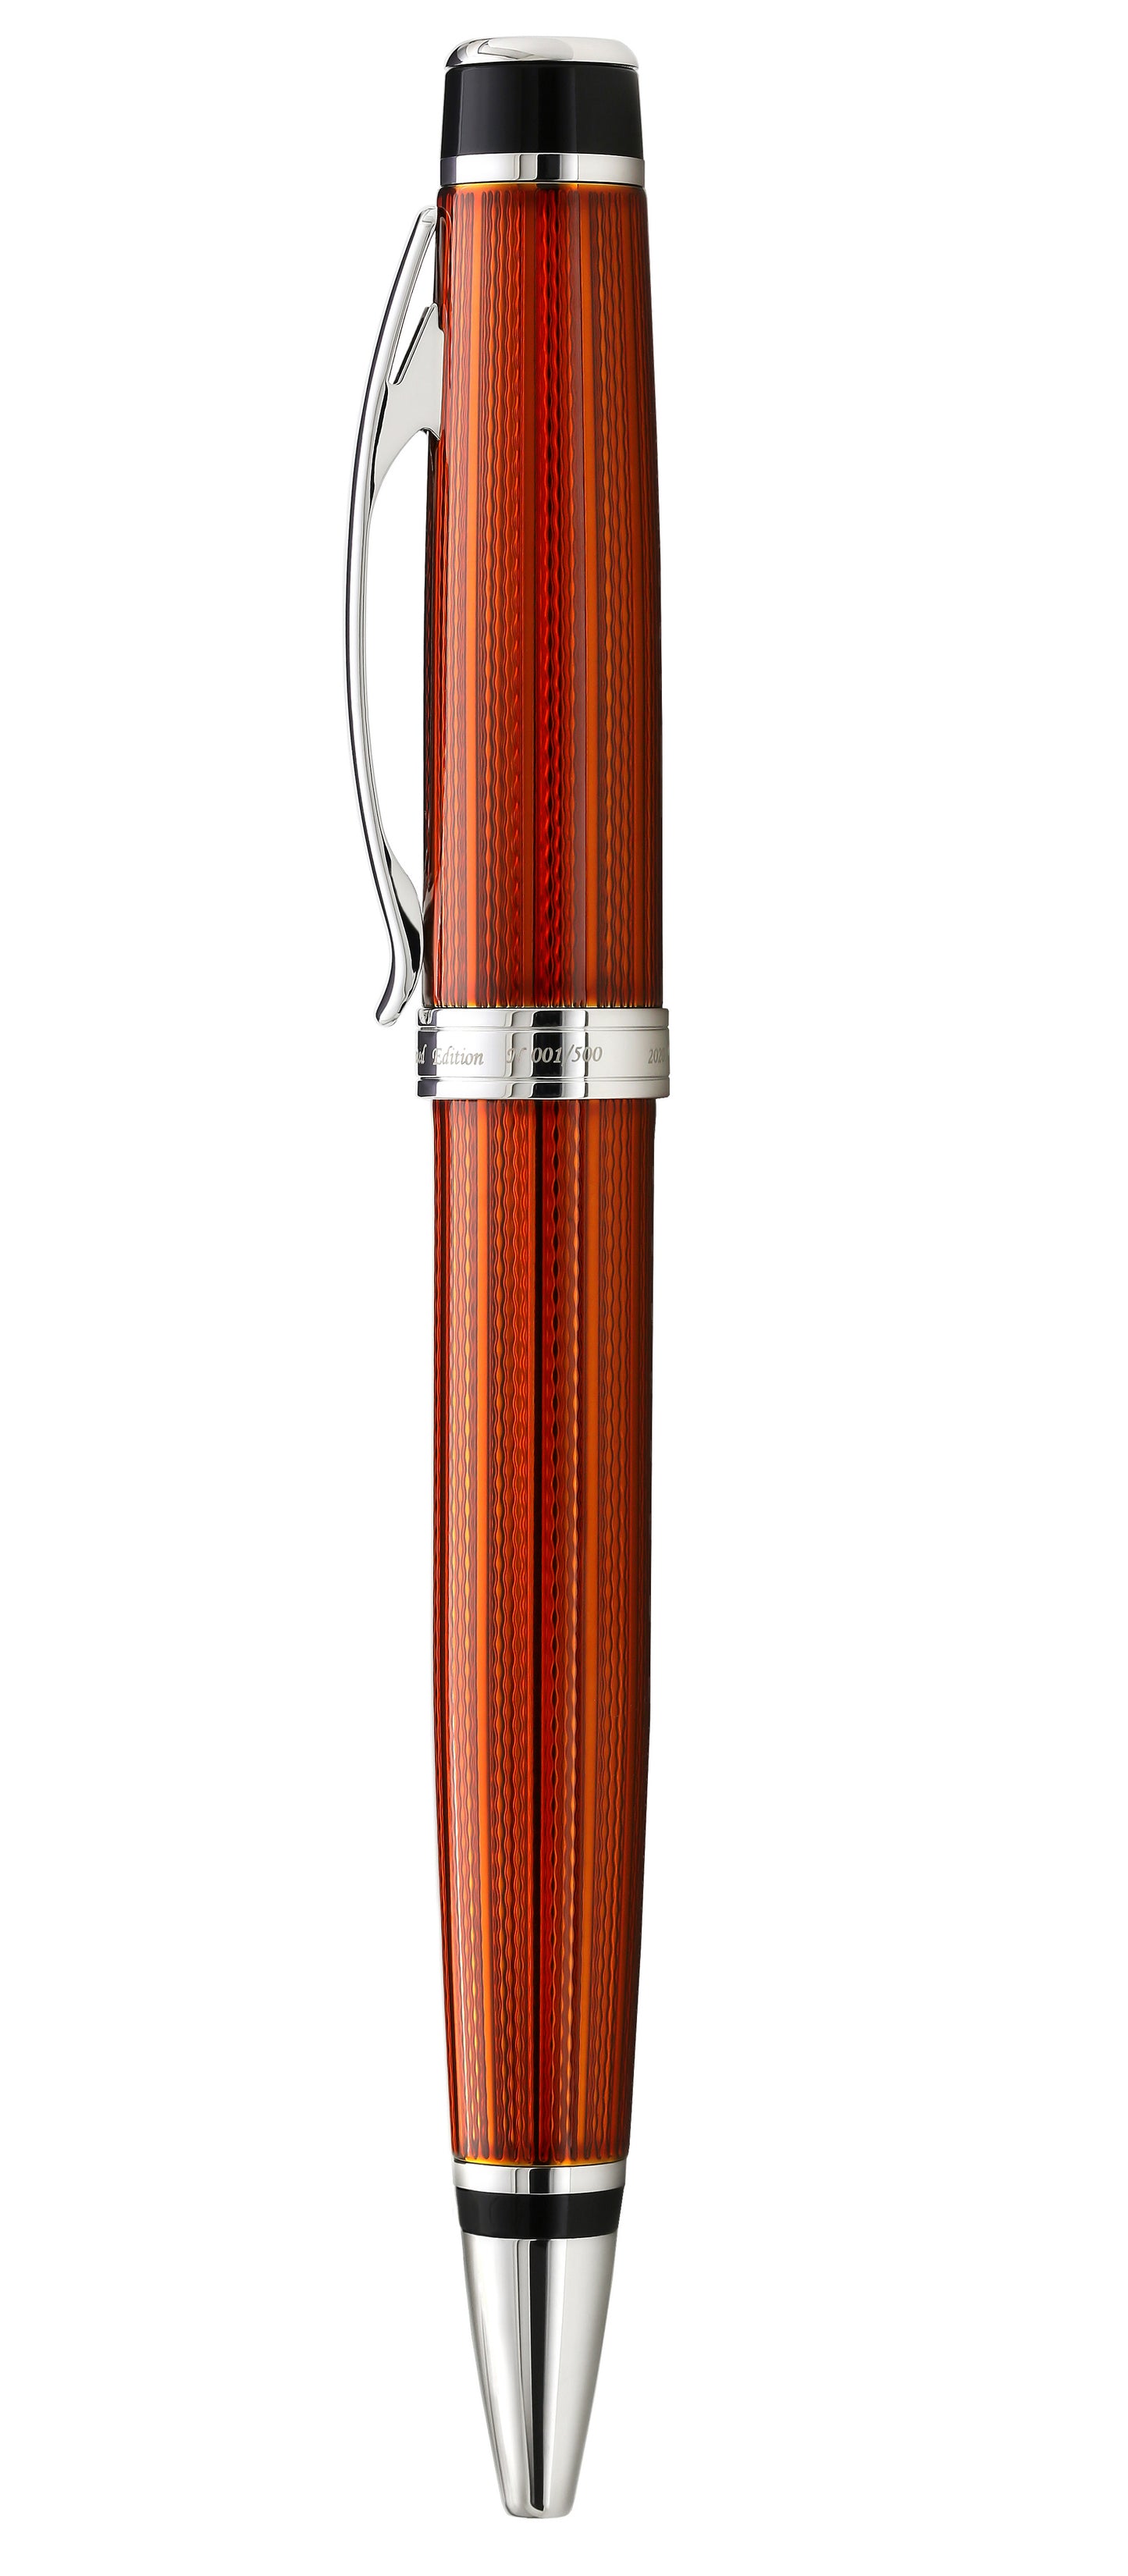 Xezo - Side view of the Incognito Sunstone B ballpoint pen